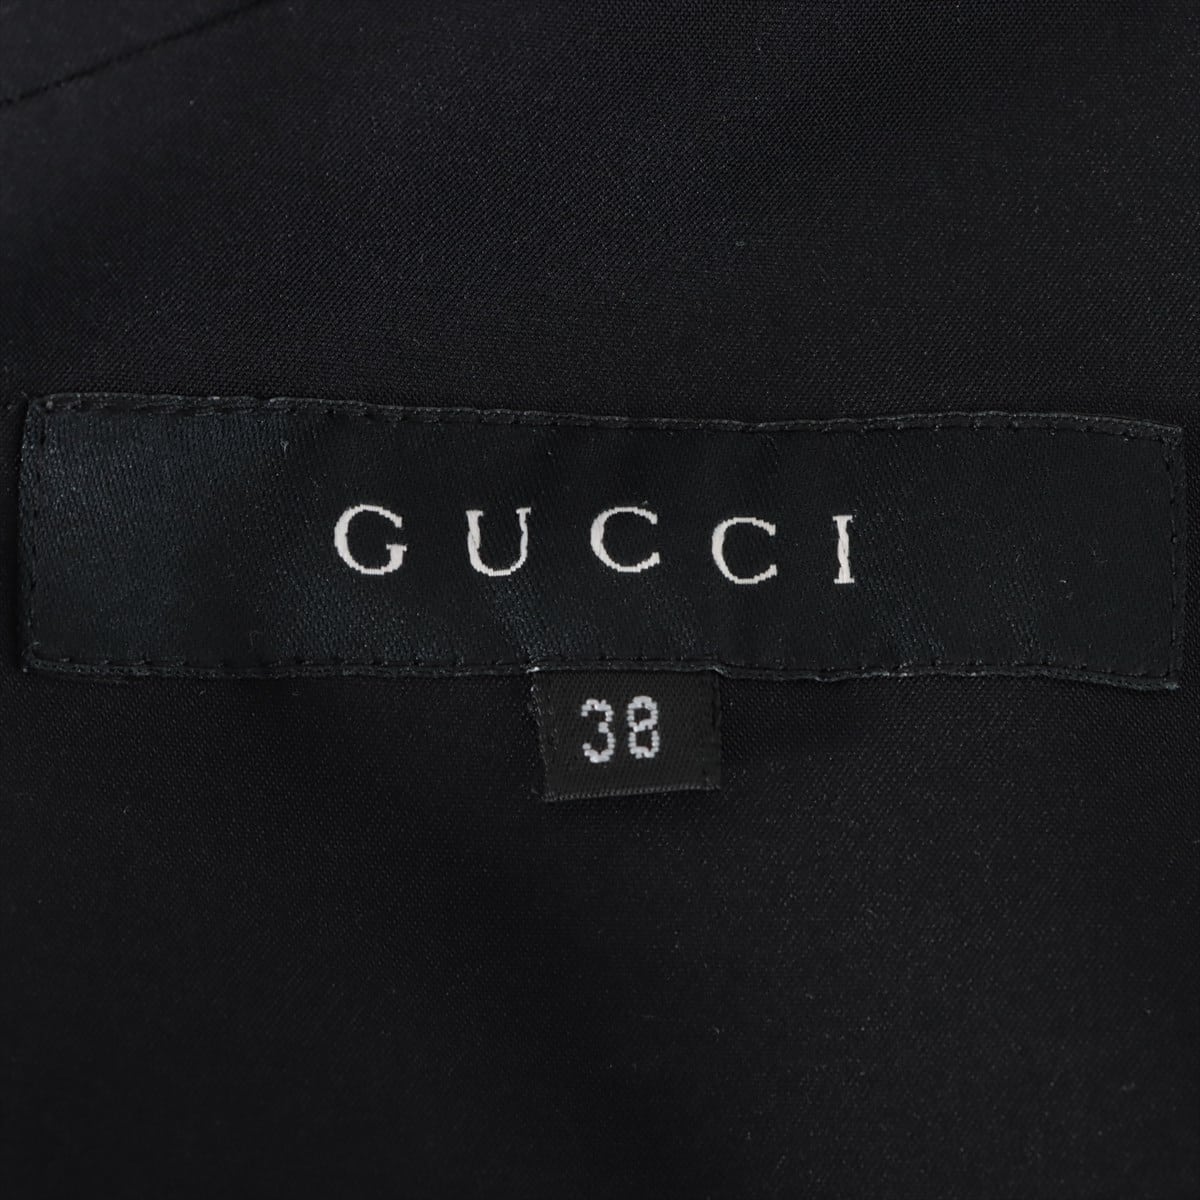 Gucci 03 Rayon * Naylon Setup 38 Ladies' Black